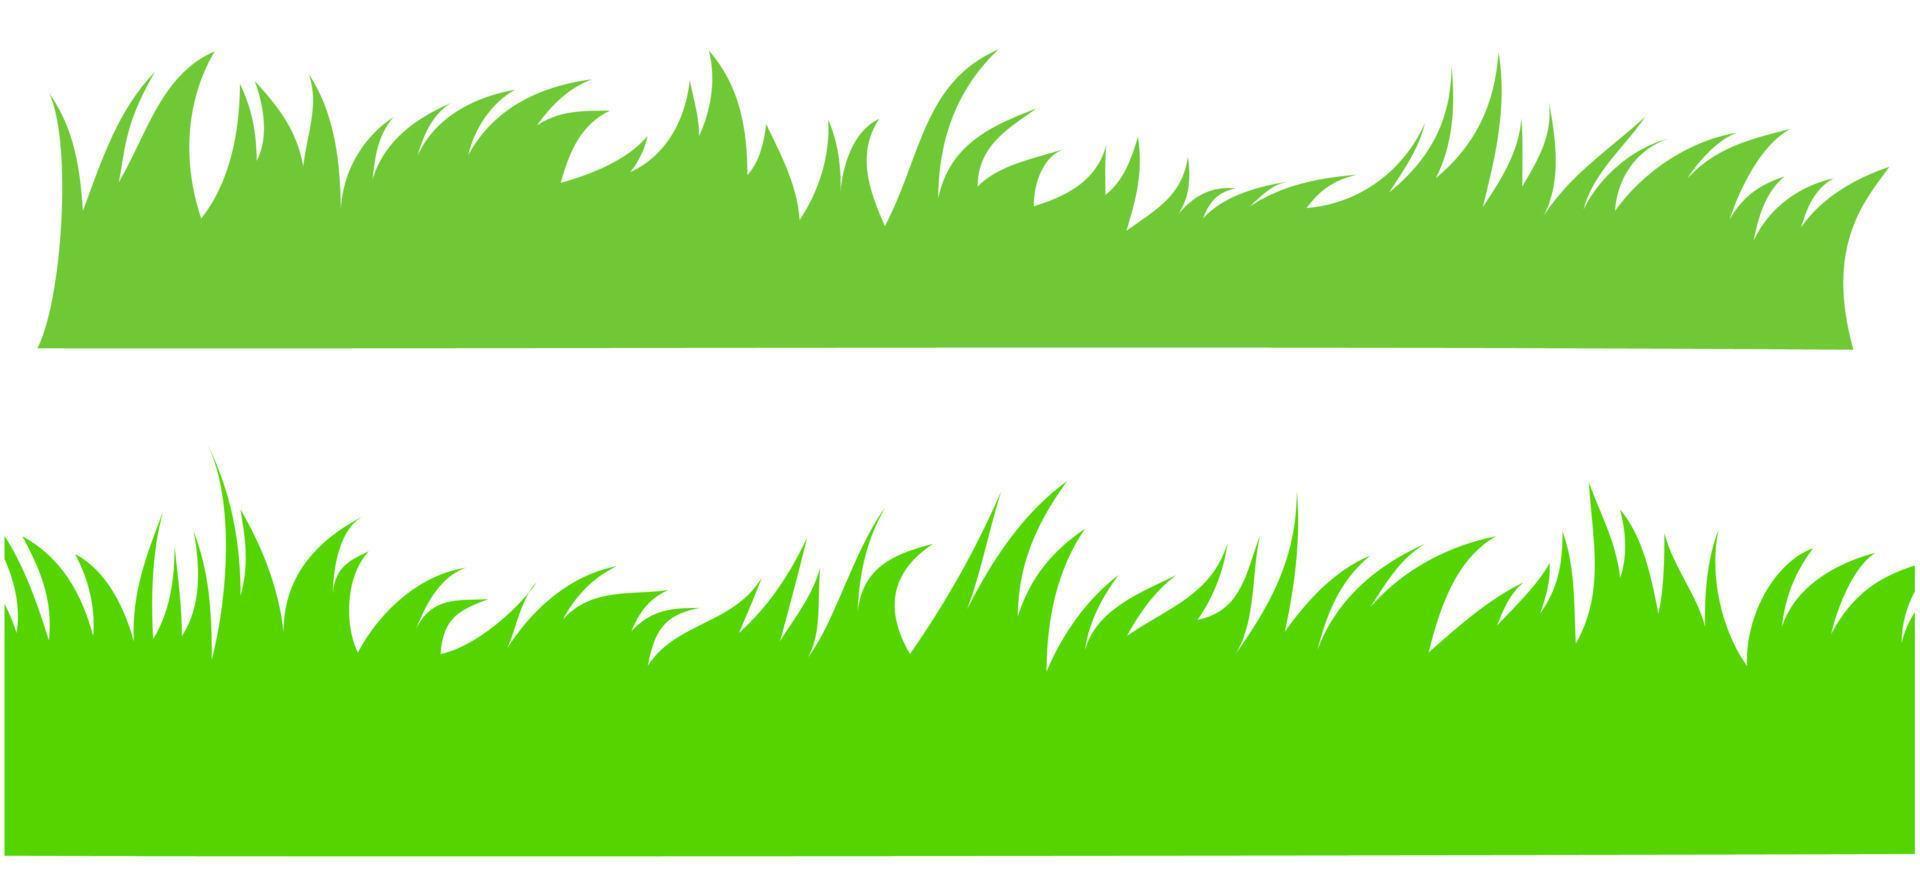 Illustration des grünen Grases lokalisierte weißen Hintergrund. vektor